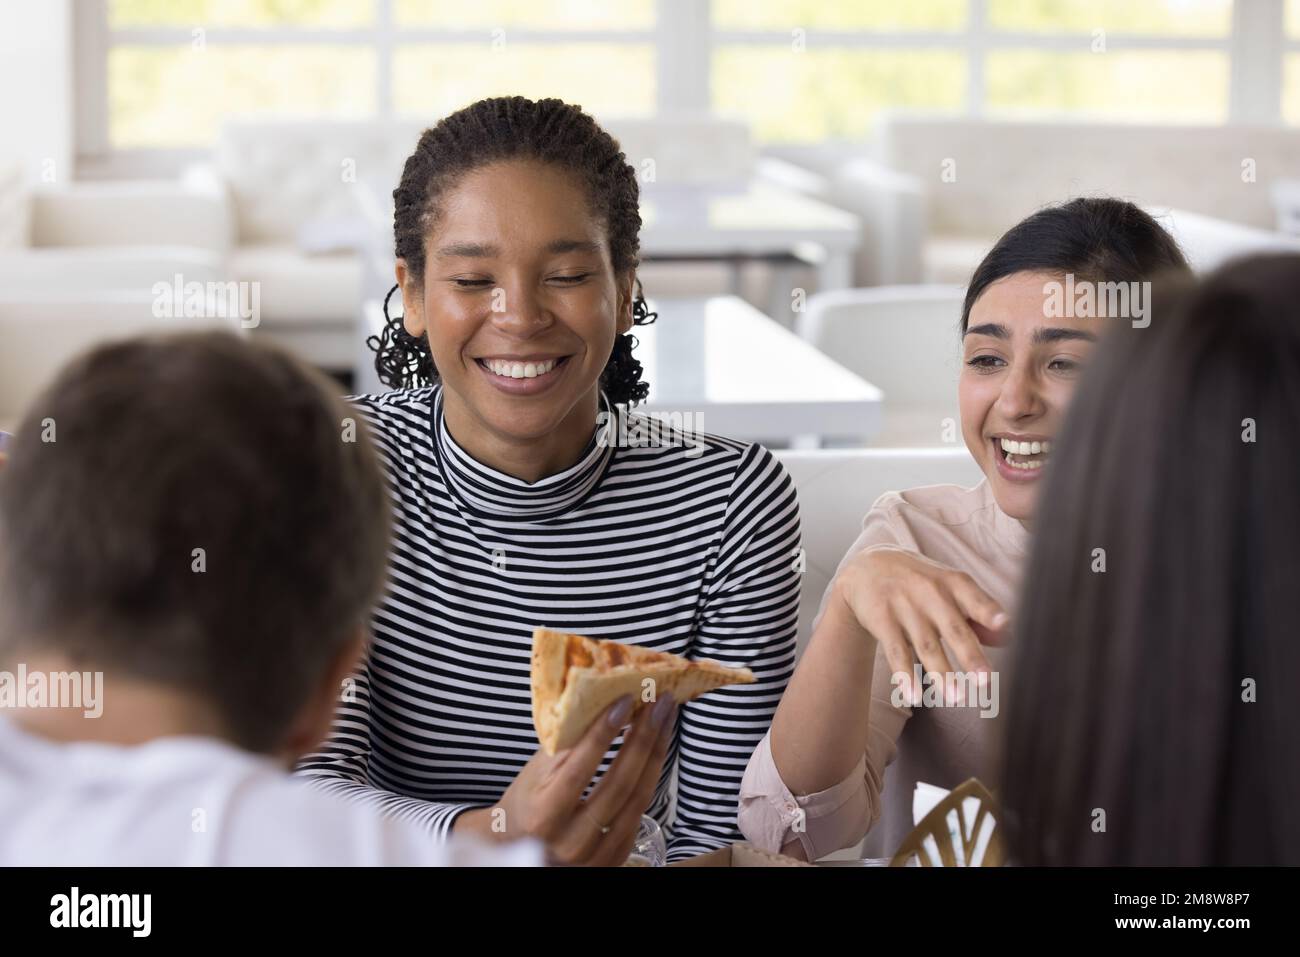 Des filles multiethniques gaies bavardent et rient, mangeant de la pizza dans la pizzeria Banque D'Images